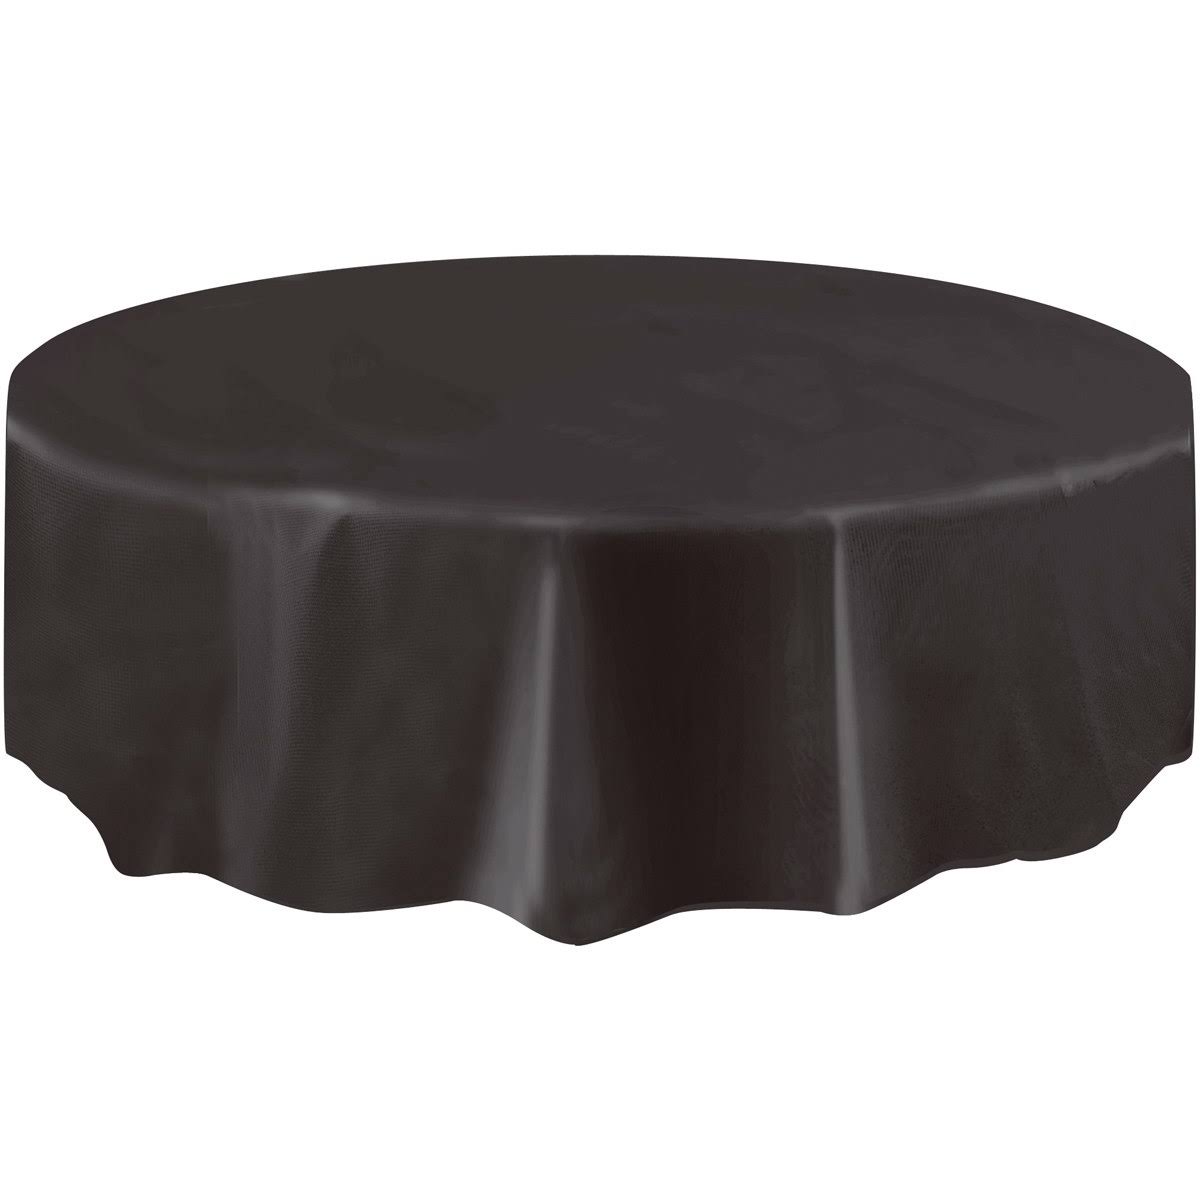 Unique Round Plastic Table Cover - 84", Black